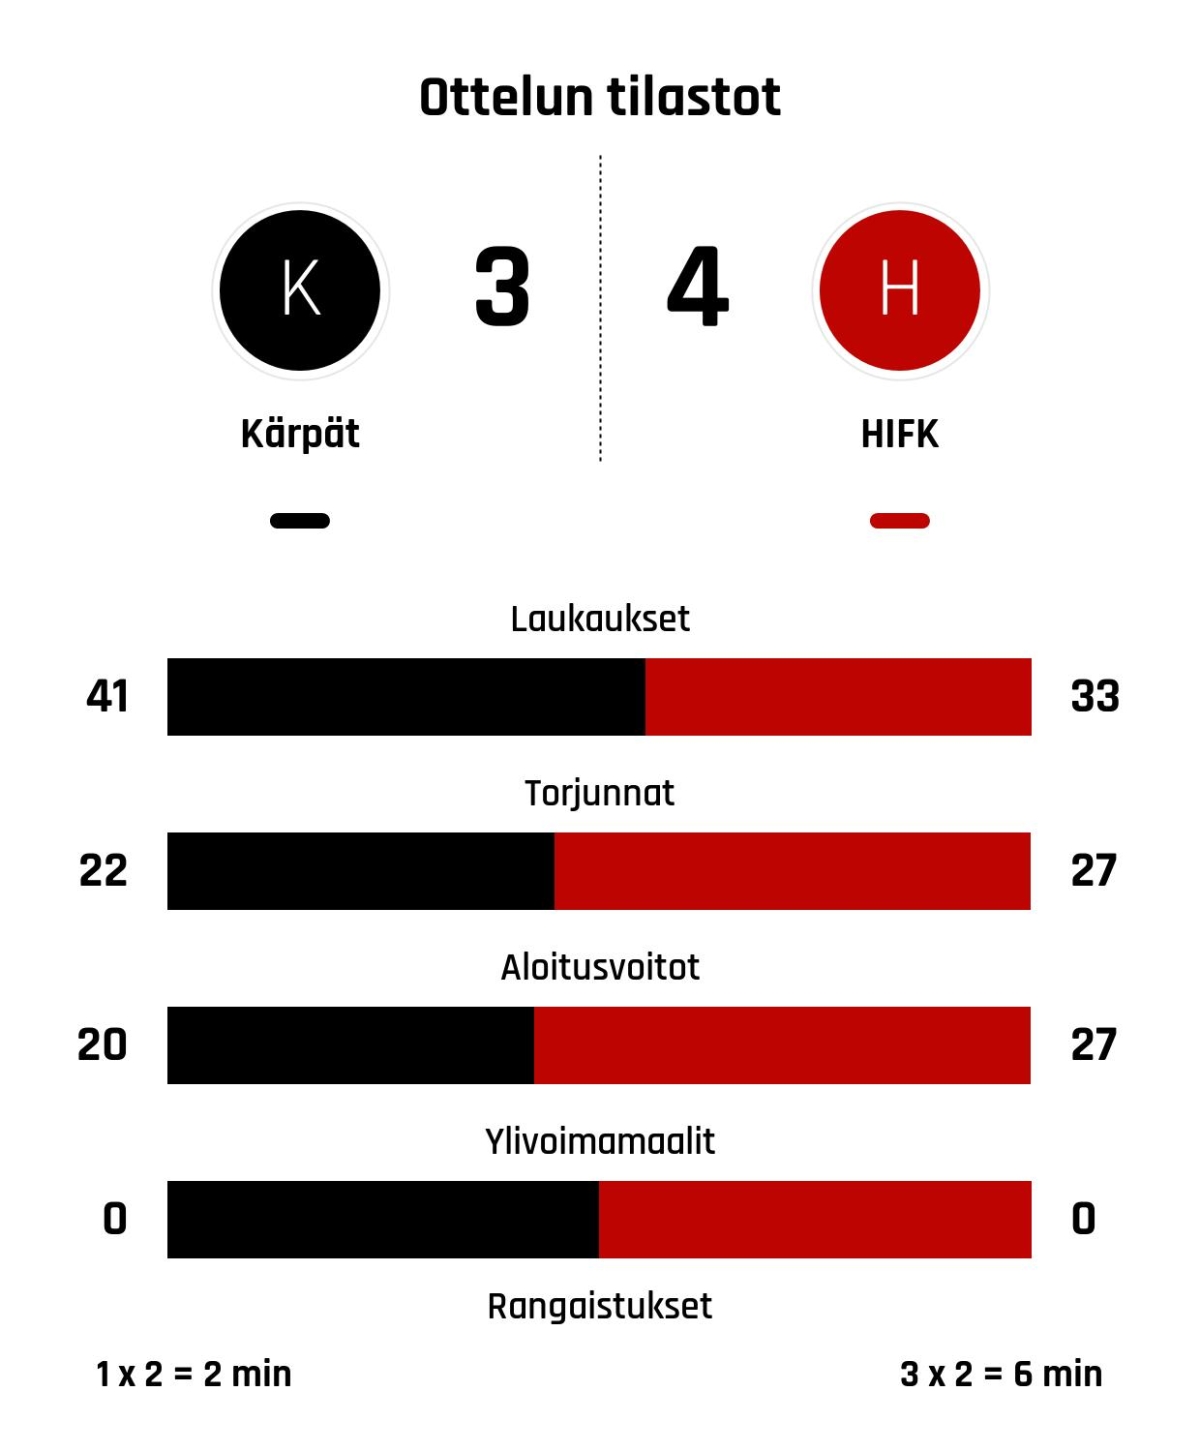 Kärppien kiri ei riittänyt – HIFK voittoon